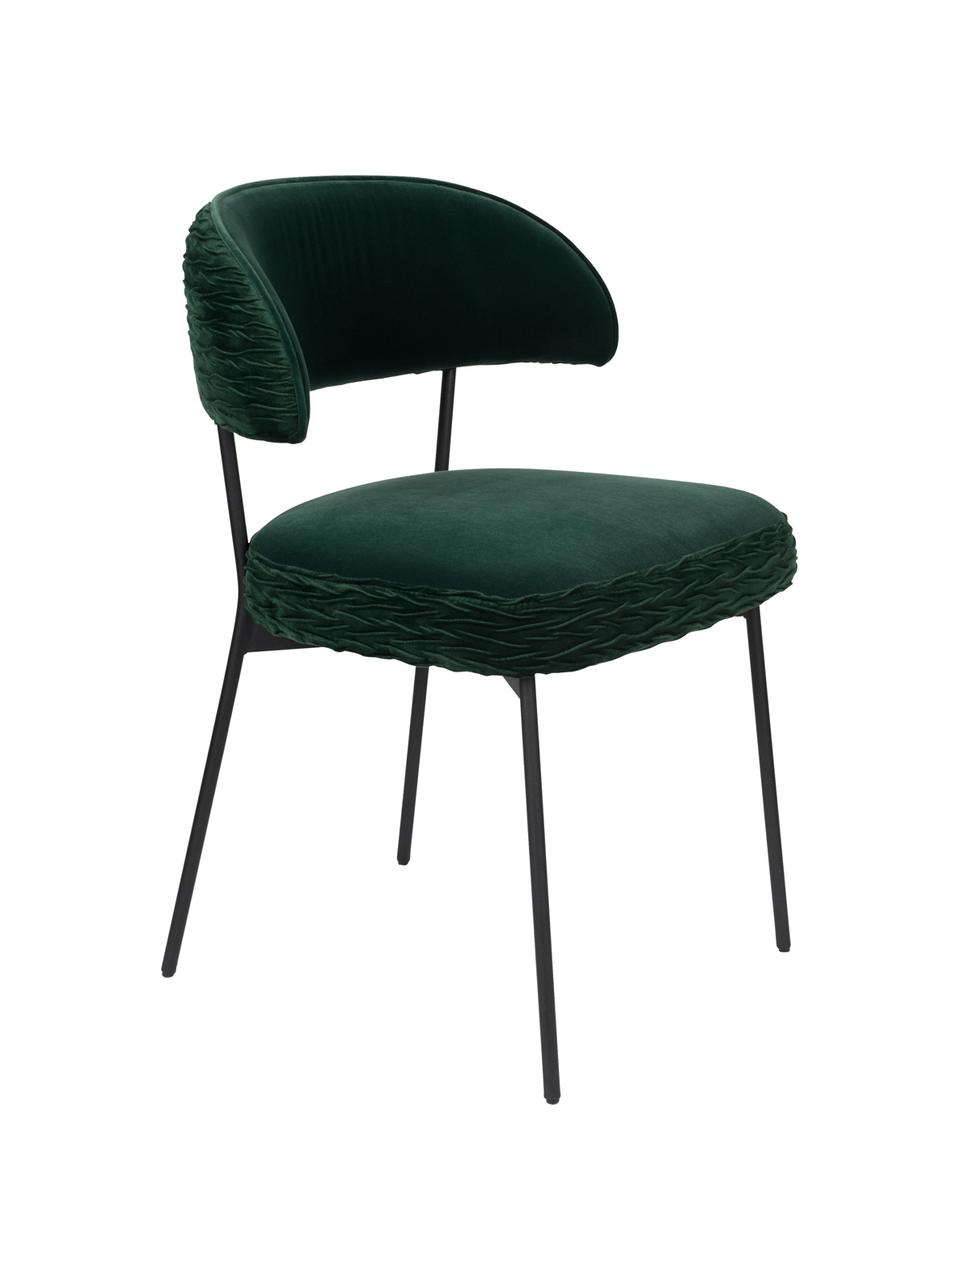 Krzesło tapicerowane z aksamitu The Winner Takes It All, Tapicerka: aksamit poliestrowy 30 00, Stelaż: metal malowany proszkowo, Zielony, S 57 x G 56 cm